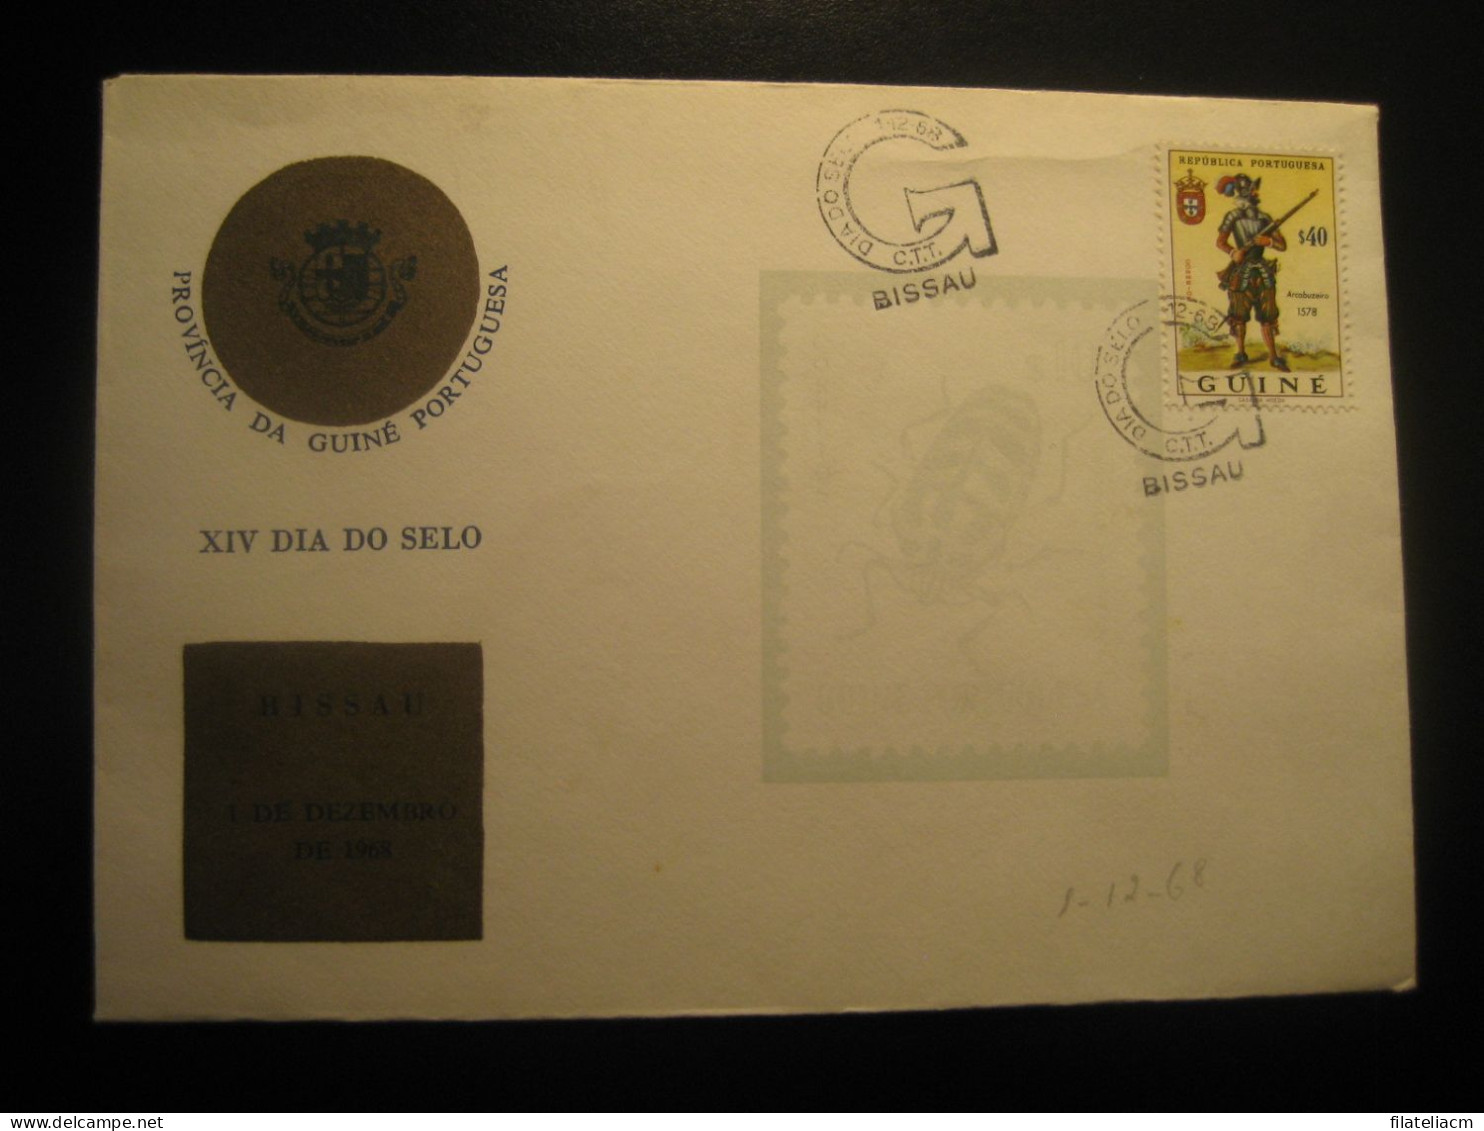 BISSAU 1968 Arcabuzeiro Stamp Dia Do Selo Cancel Cover GUINEA Portuguese Colonies Portugal Area - Guinée Portugaise